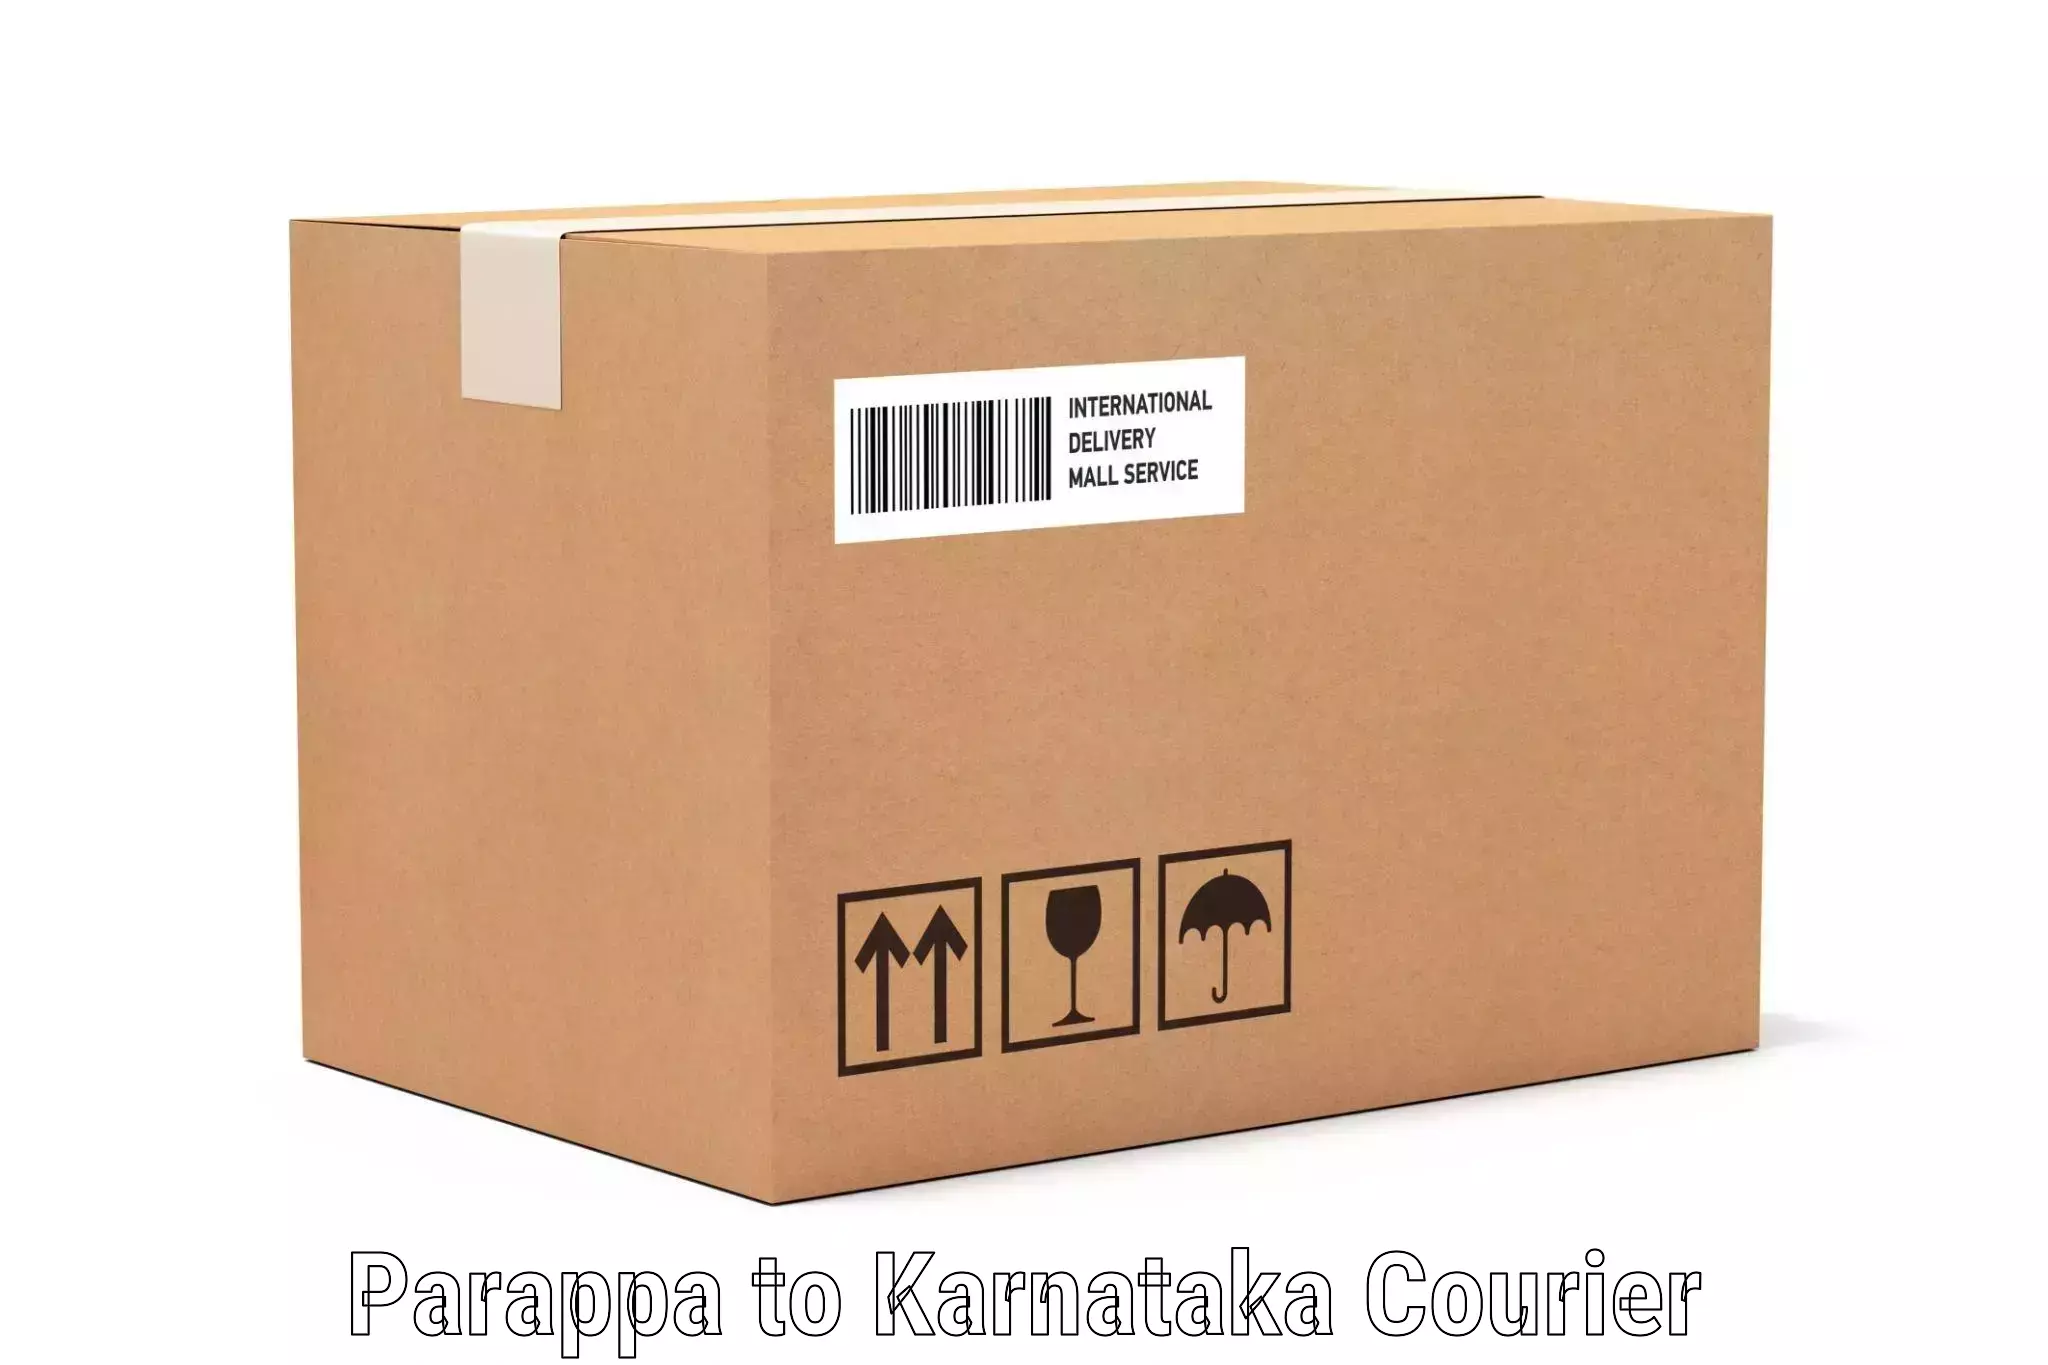 Luggage transfer service Parappa to Kodagu